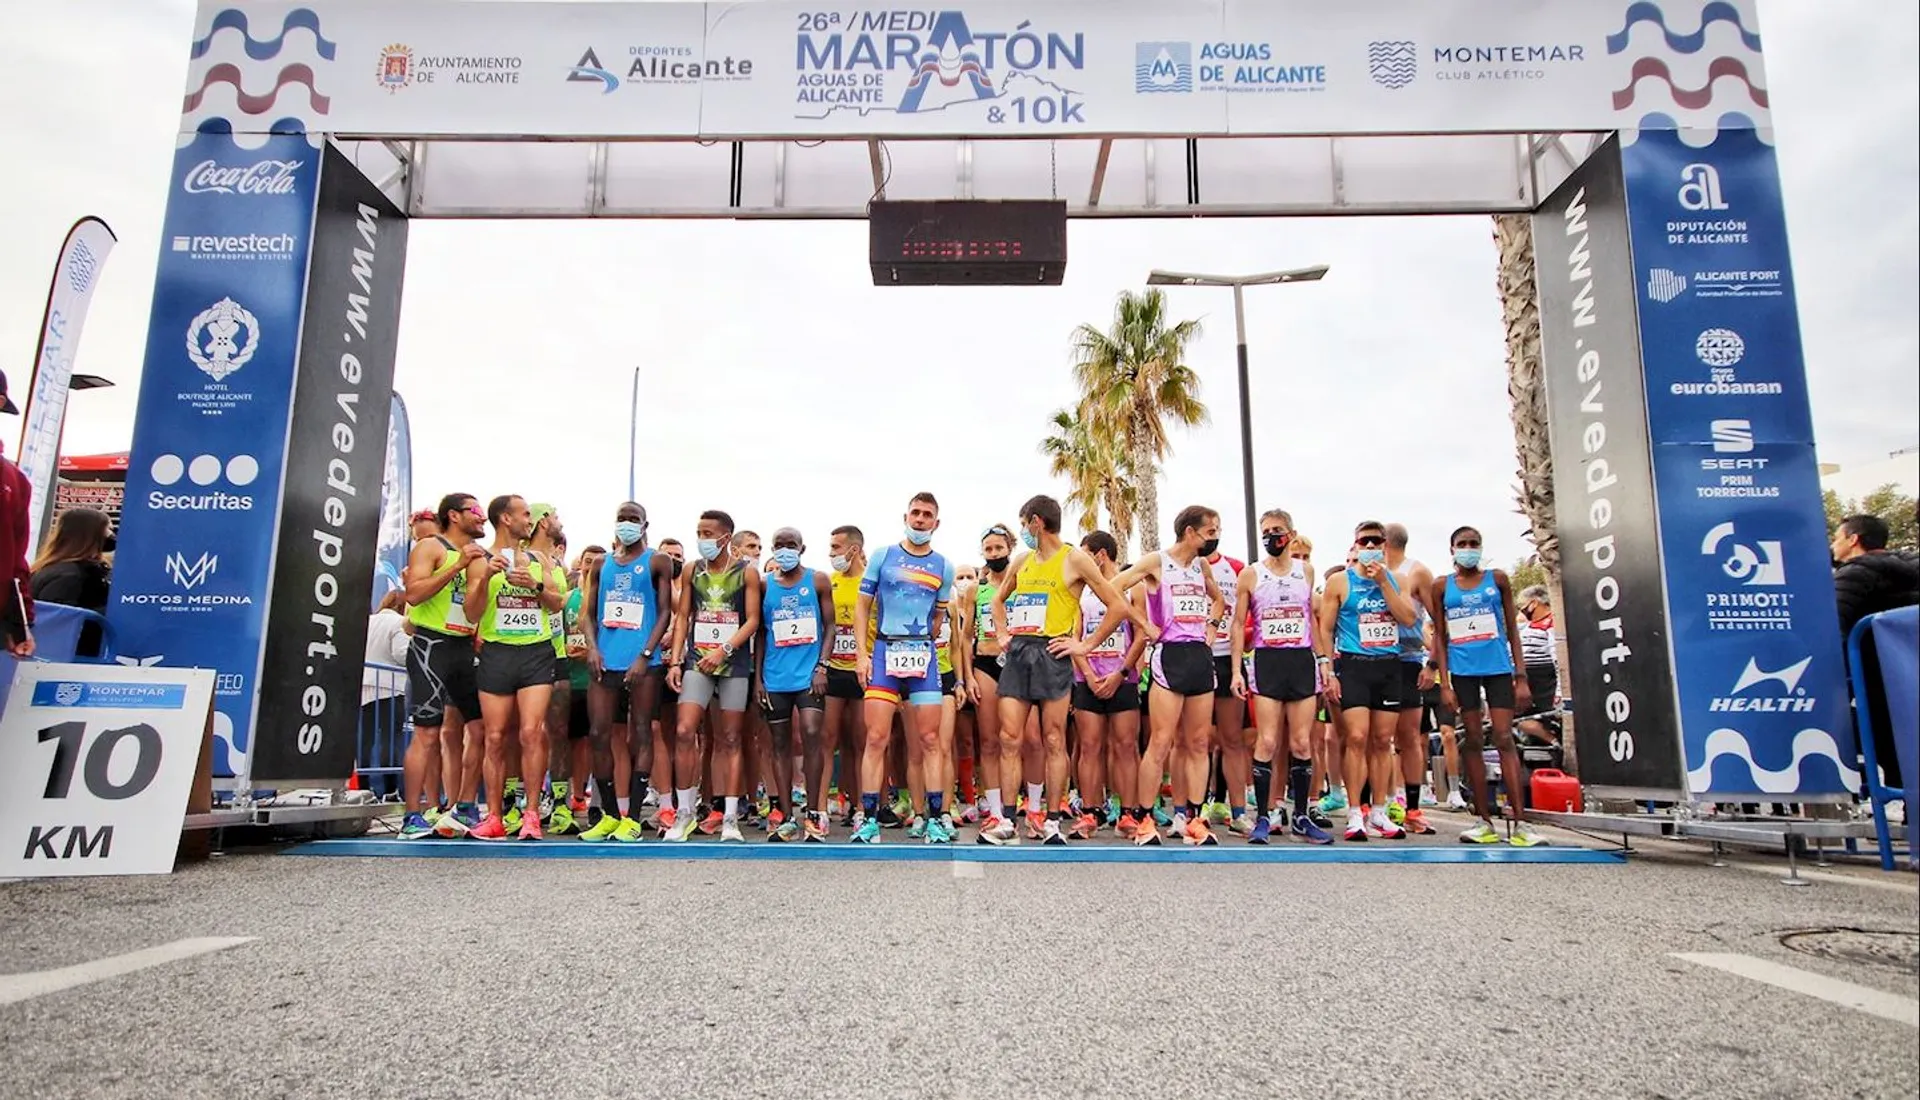 Image of Media Maraton Internacional Aguas de Alicante